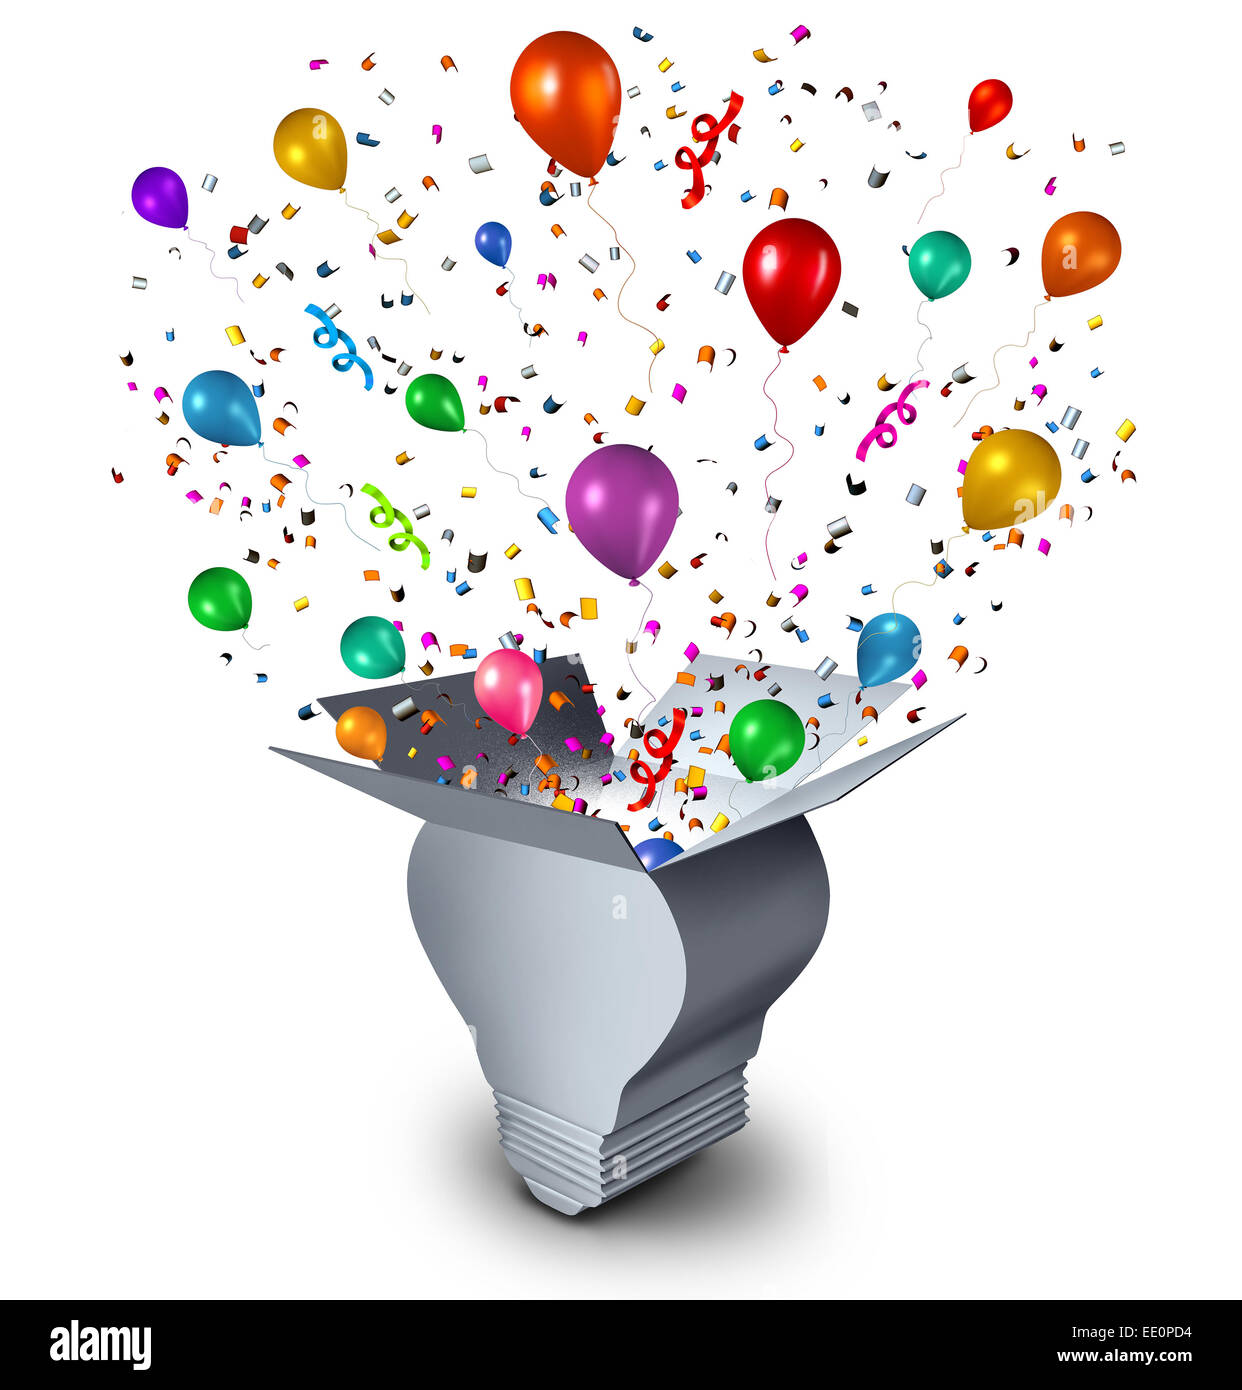 Party Ideen und Feier Event-Planung-Konzept einer offenen Karton geformt wie eine Glühbirne mit festlichen Ballons Konfetti und Luftschlangen coming out als ein Symbol für Spaß denken. Stockfoto